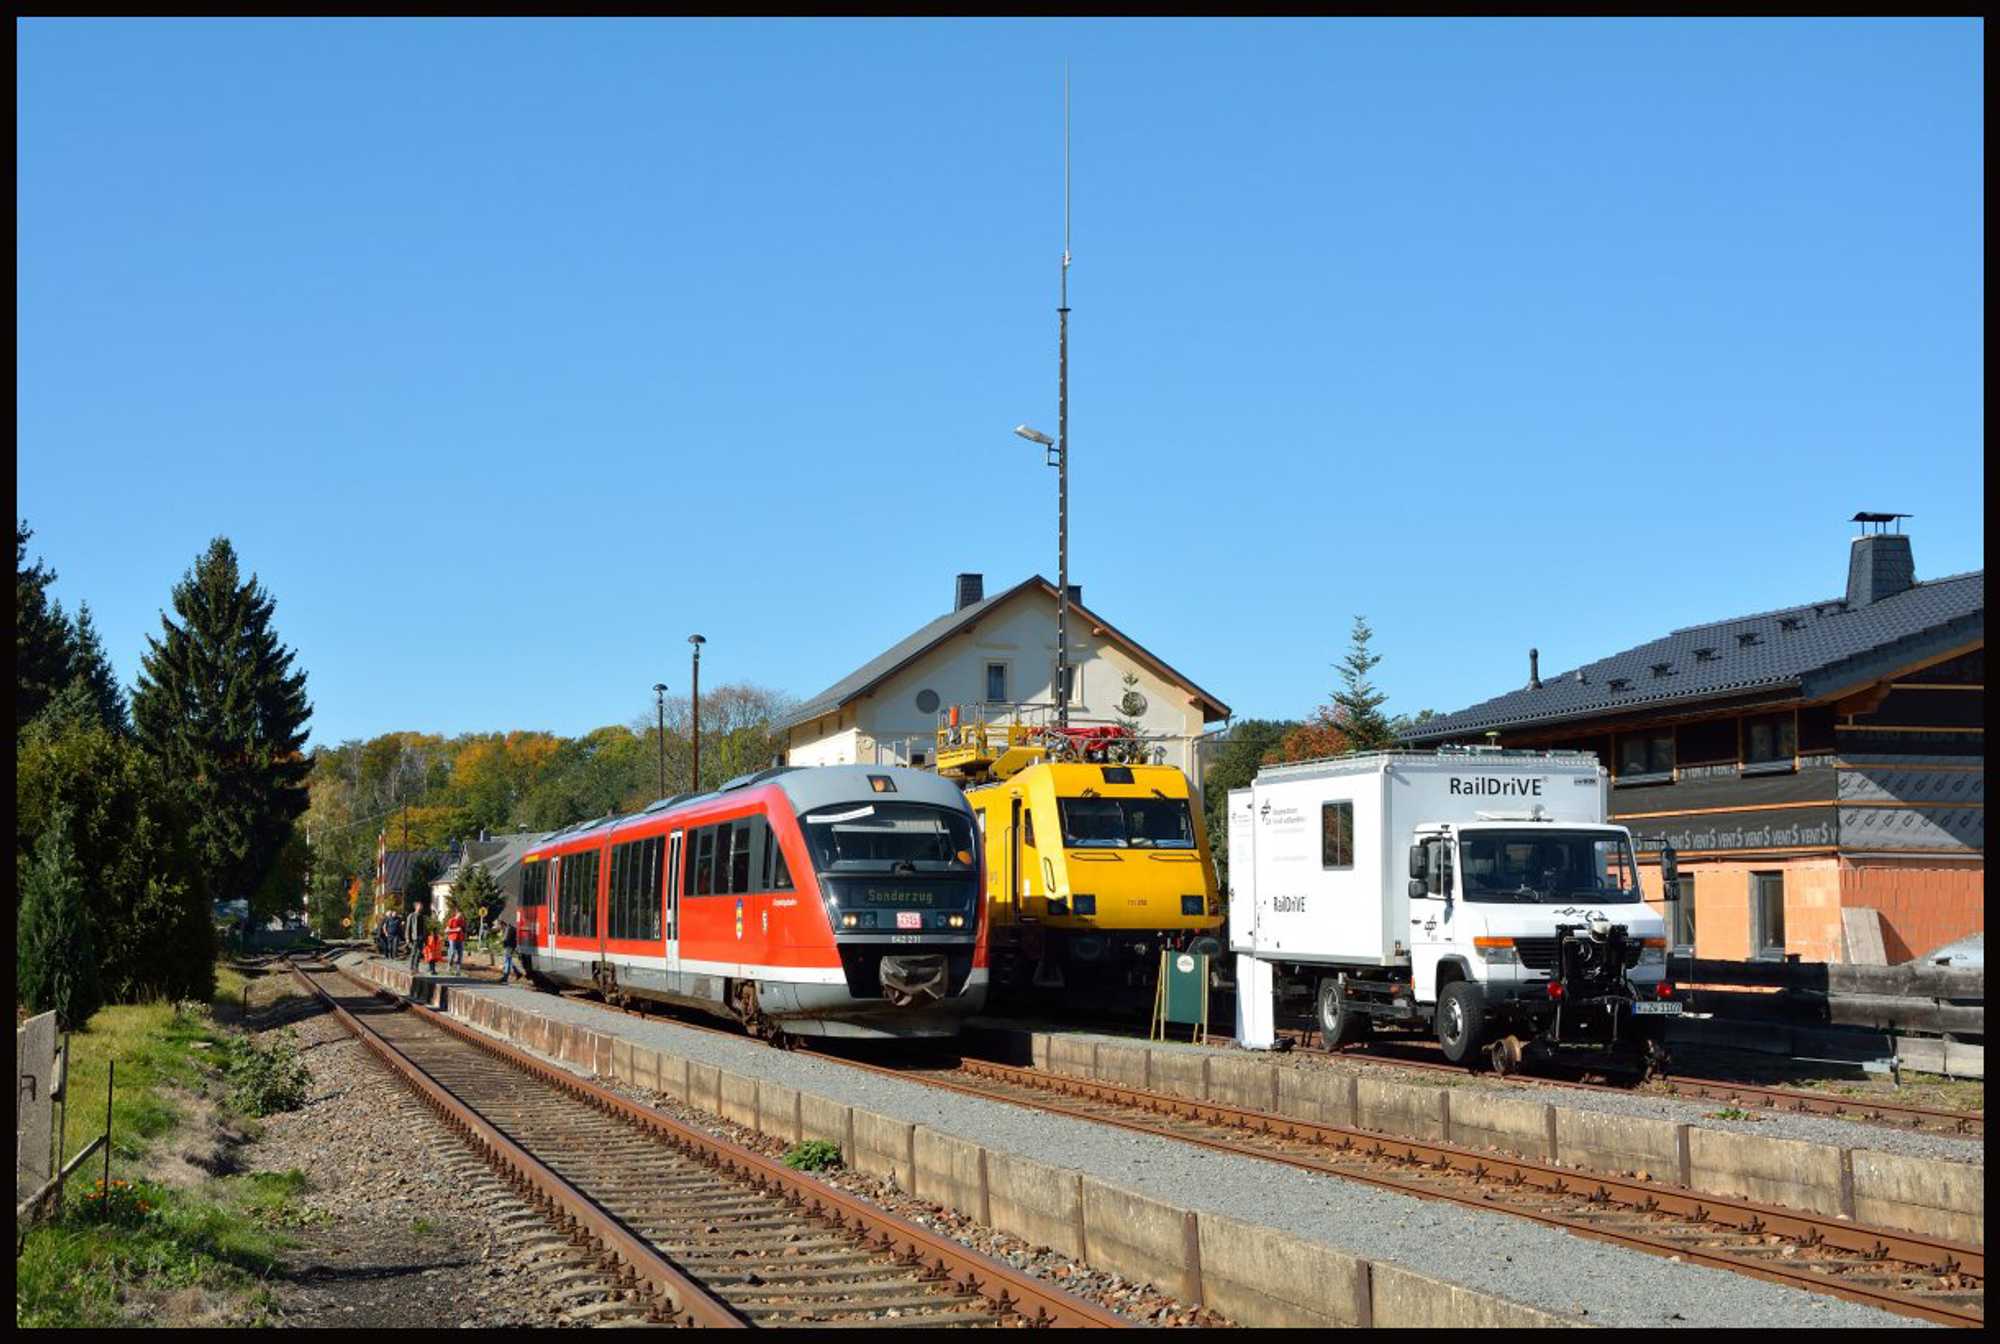 Manche Eisenbahnfreunde setzen die BSg-Linie mit einer Museumsbahn gleich. Dabei übersehen sie, dass es sich um eine Betriebsstrecke für die DB Erzgebirgsbahn handelt, die darauf wie hier 2019 u. a. ihre Triebwagen überführt.